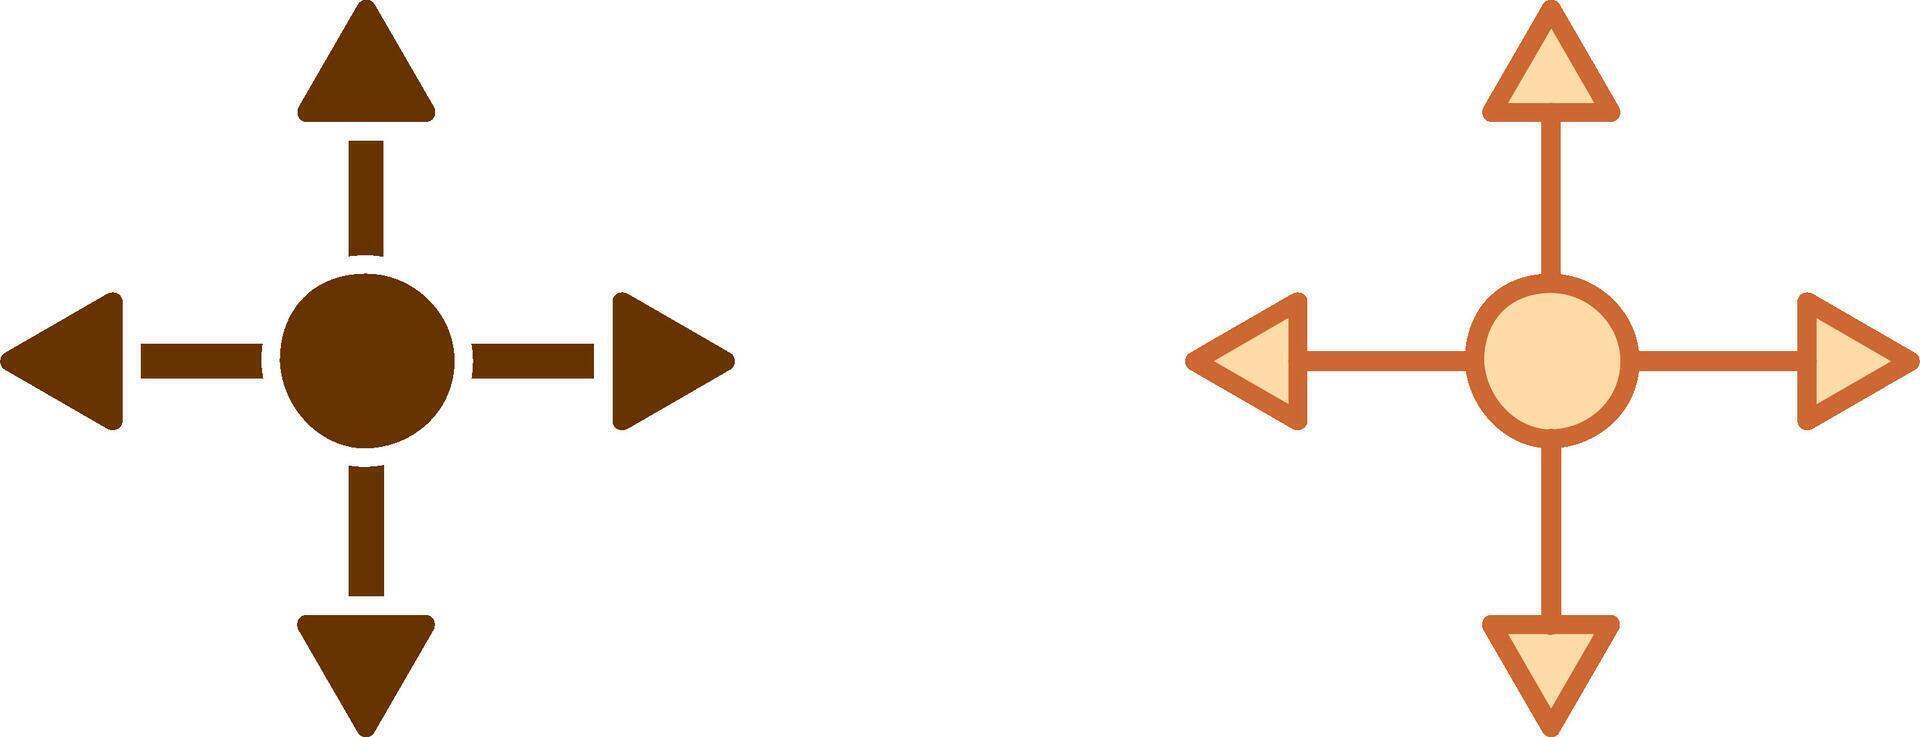 Arrows Icon Design vector